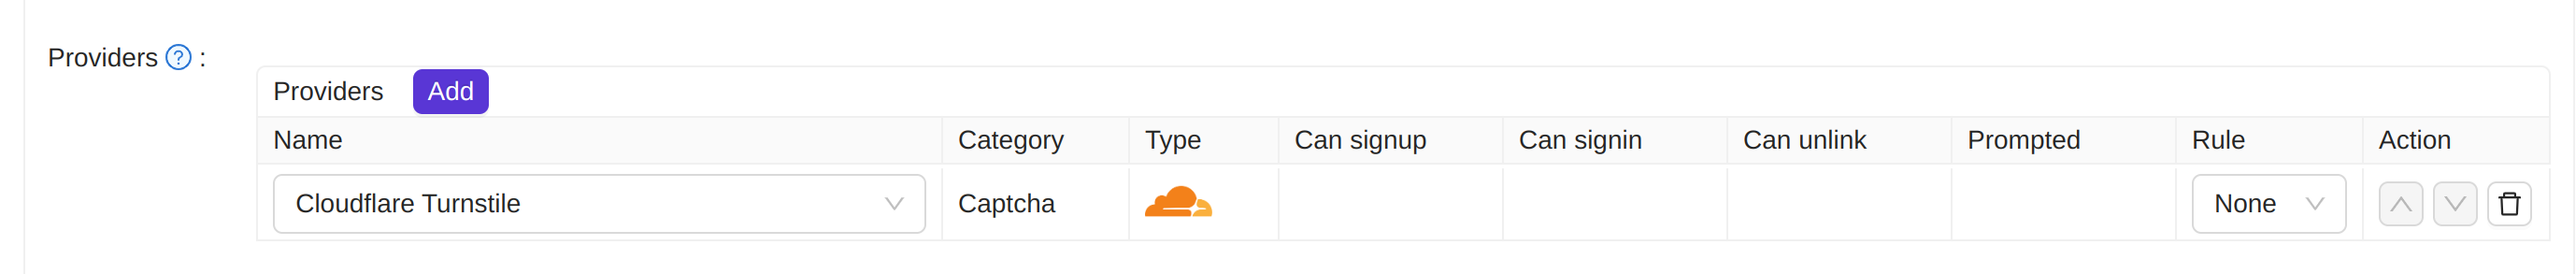 Cloudflare Turnstile提供者应用